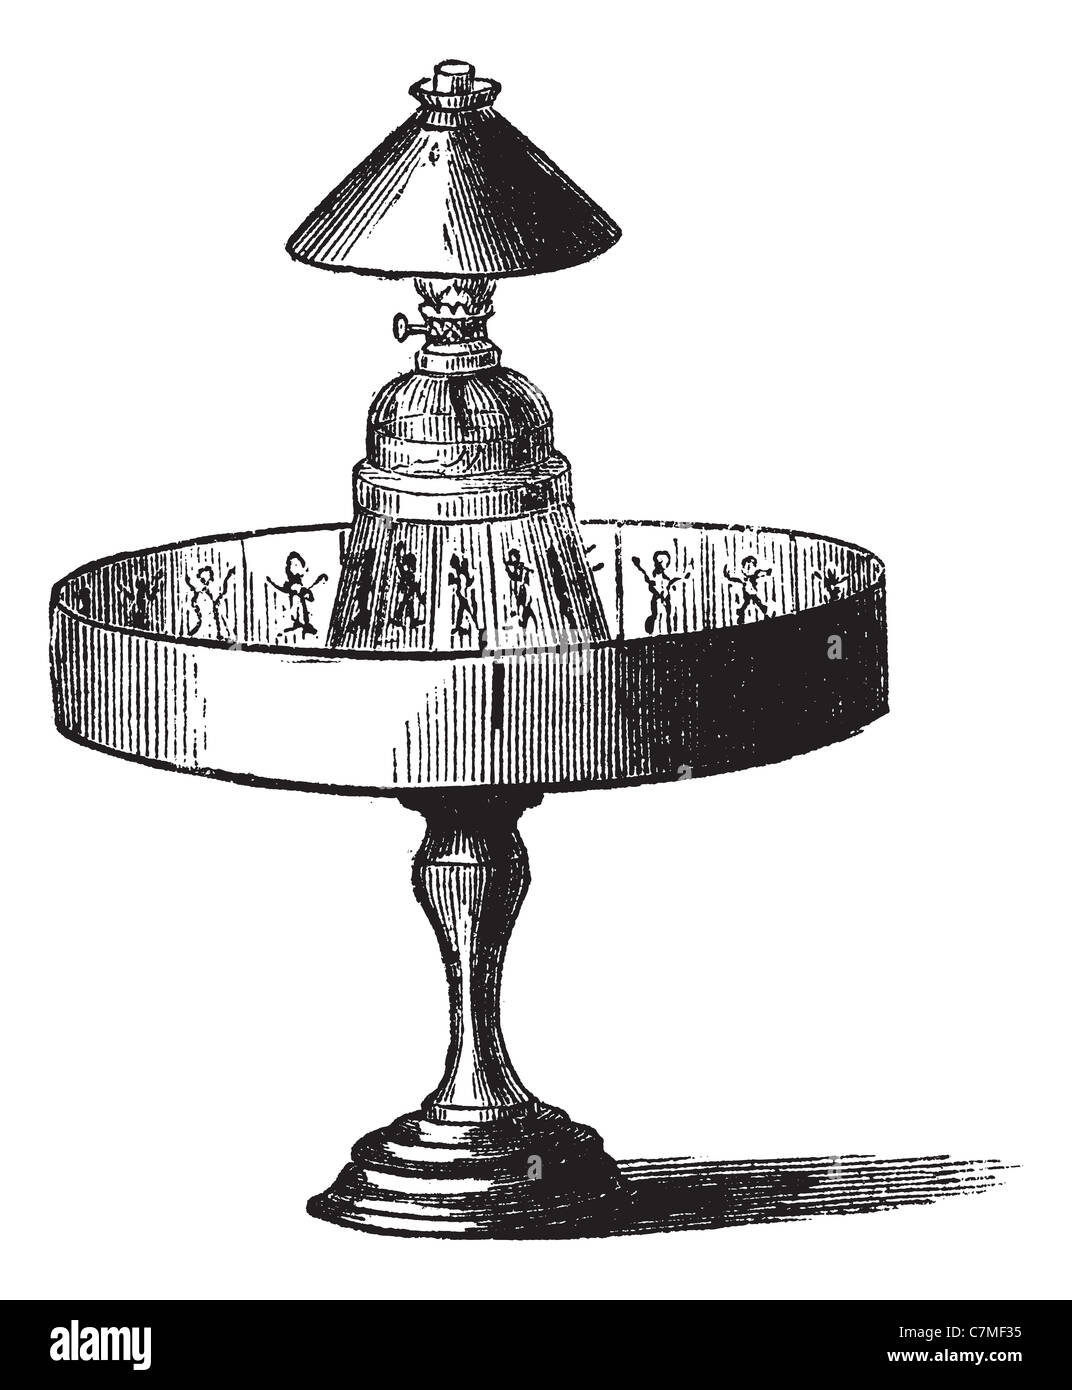 Praxinoscope, vintage engraving. Old engraved illustration of Praxinoscope isolated on a white background. Stock Photo